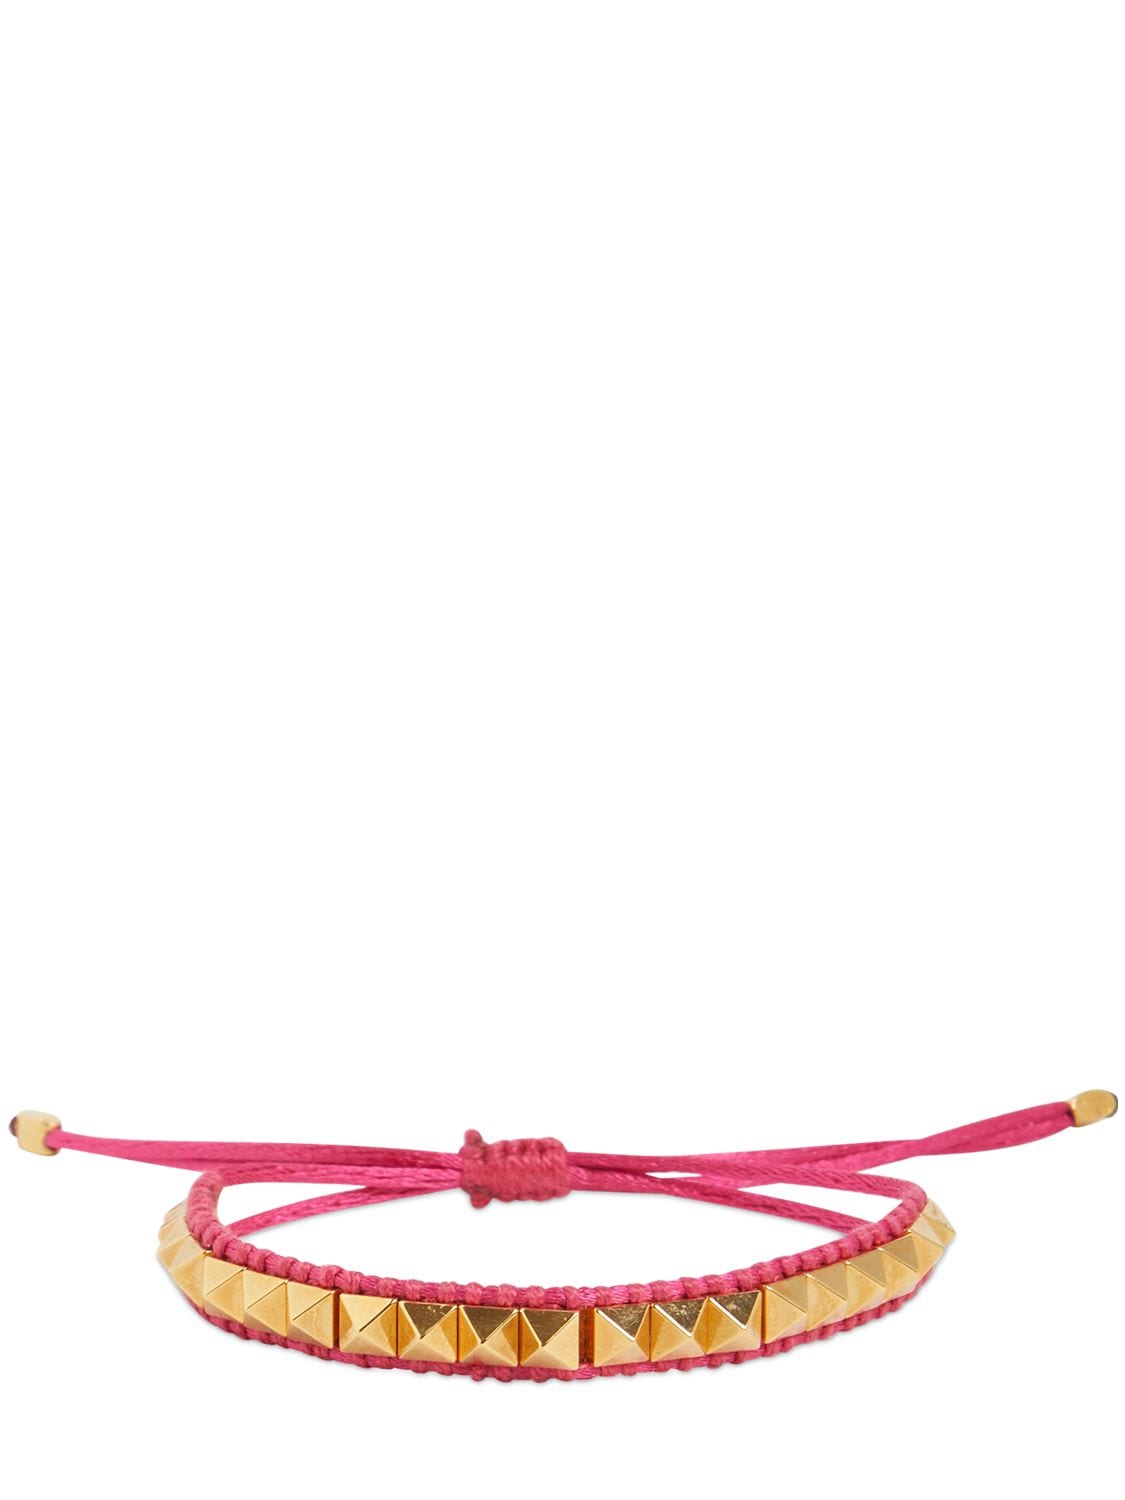 Valentino Garavani Multi Rockstud Cord Bracelet In Feminine